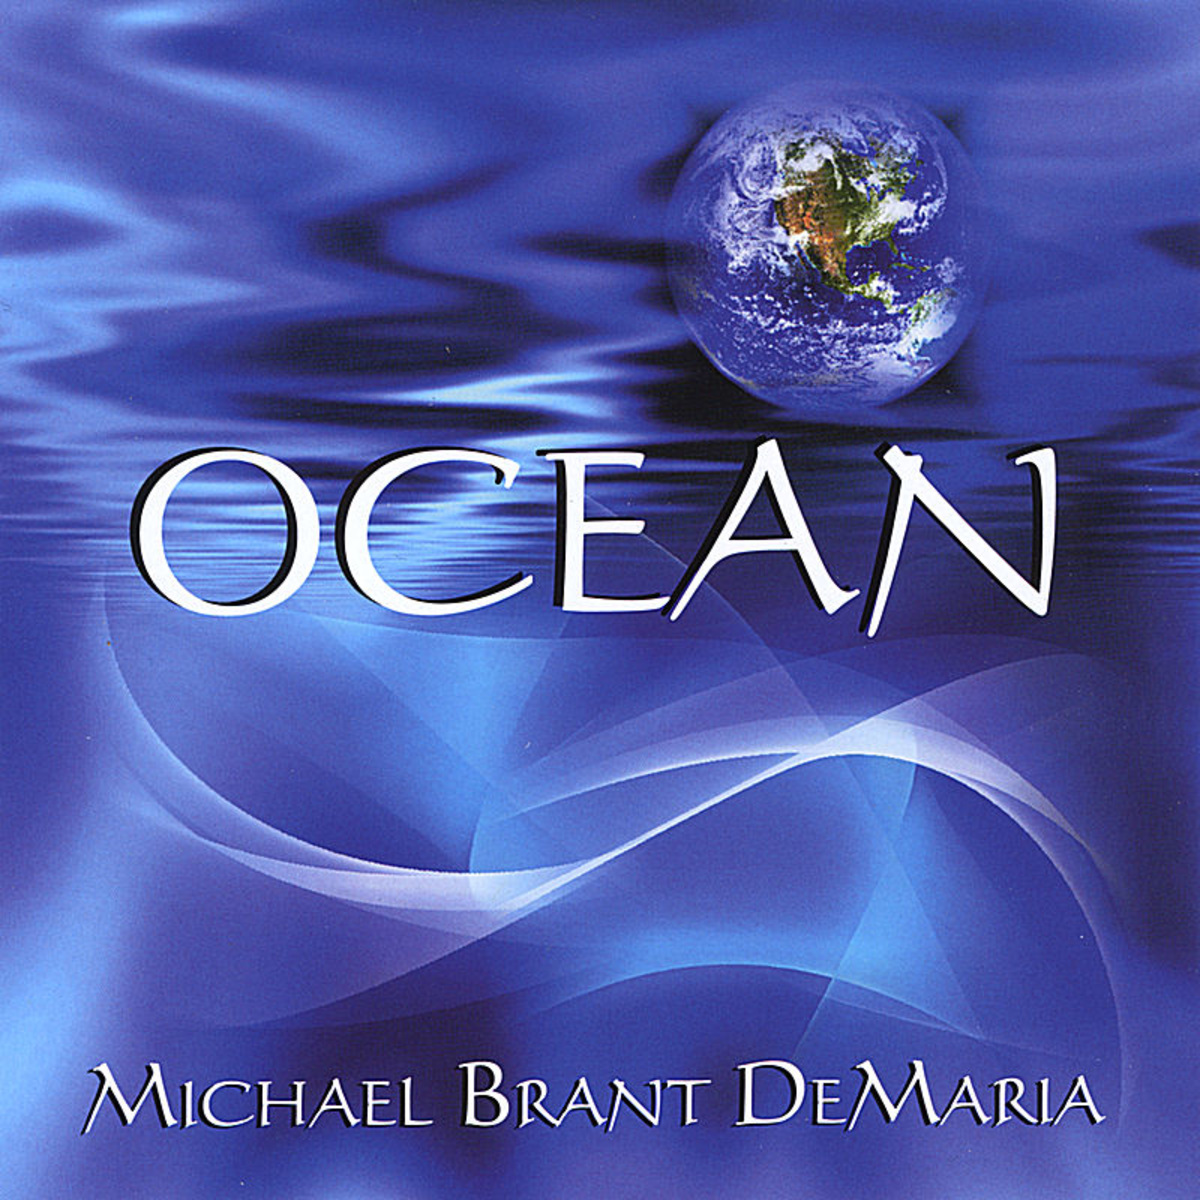 Cd Michael Brant DeMaria - Ocean Cover